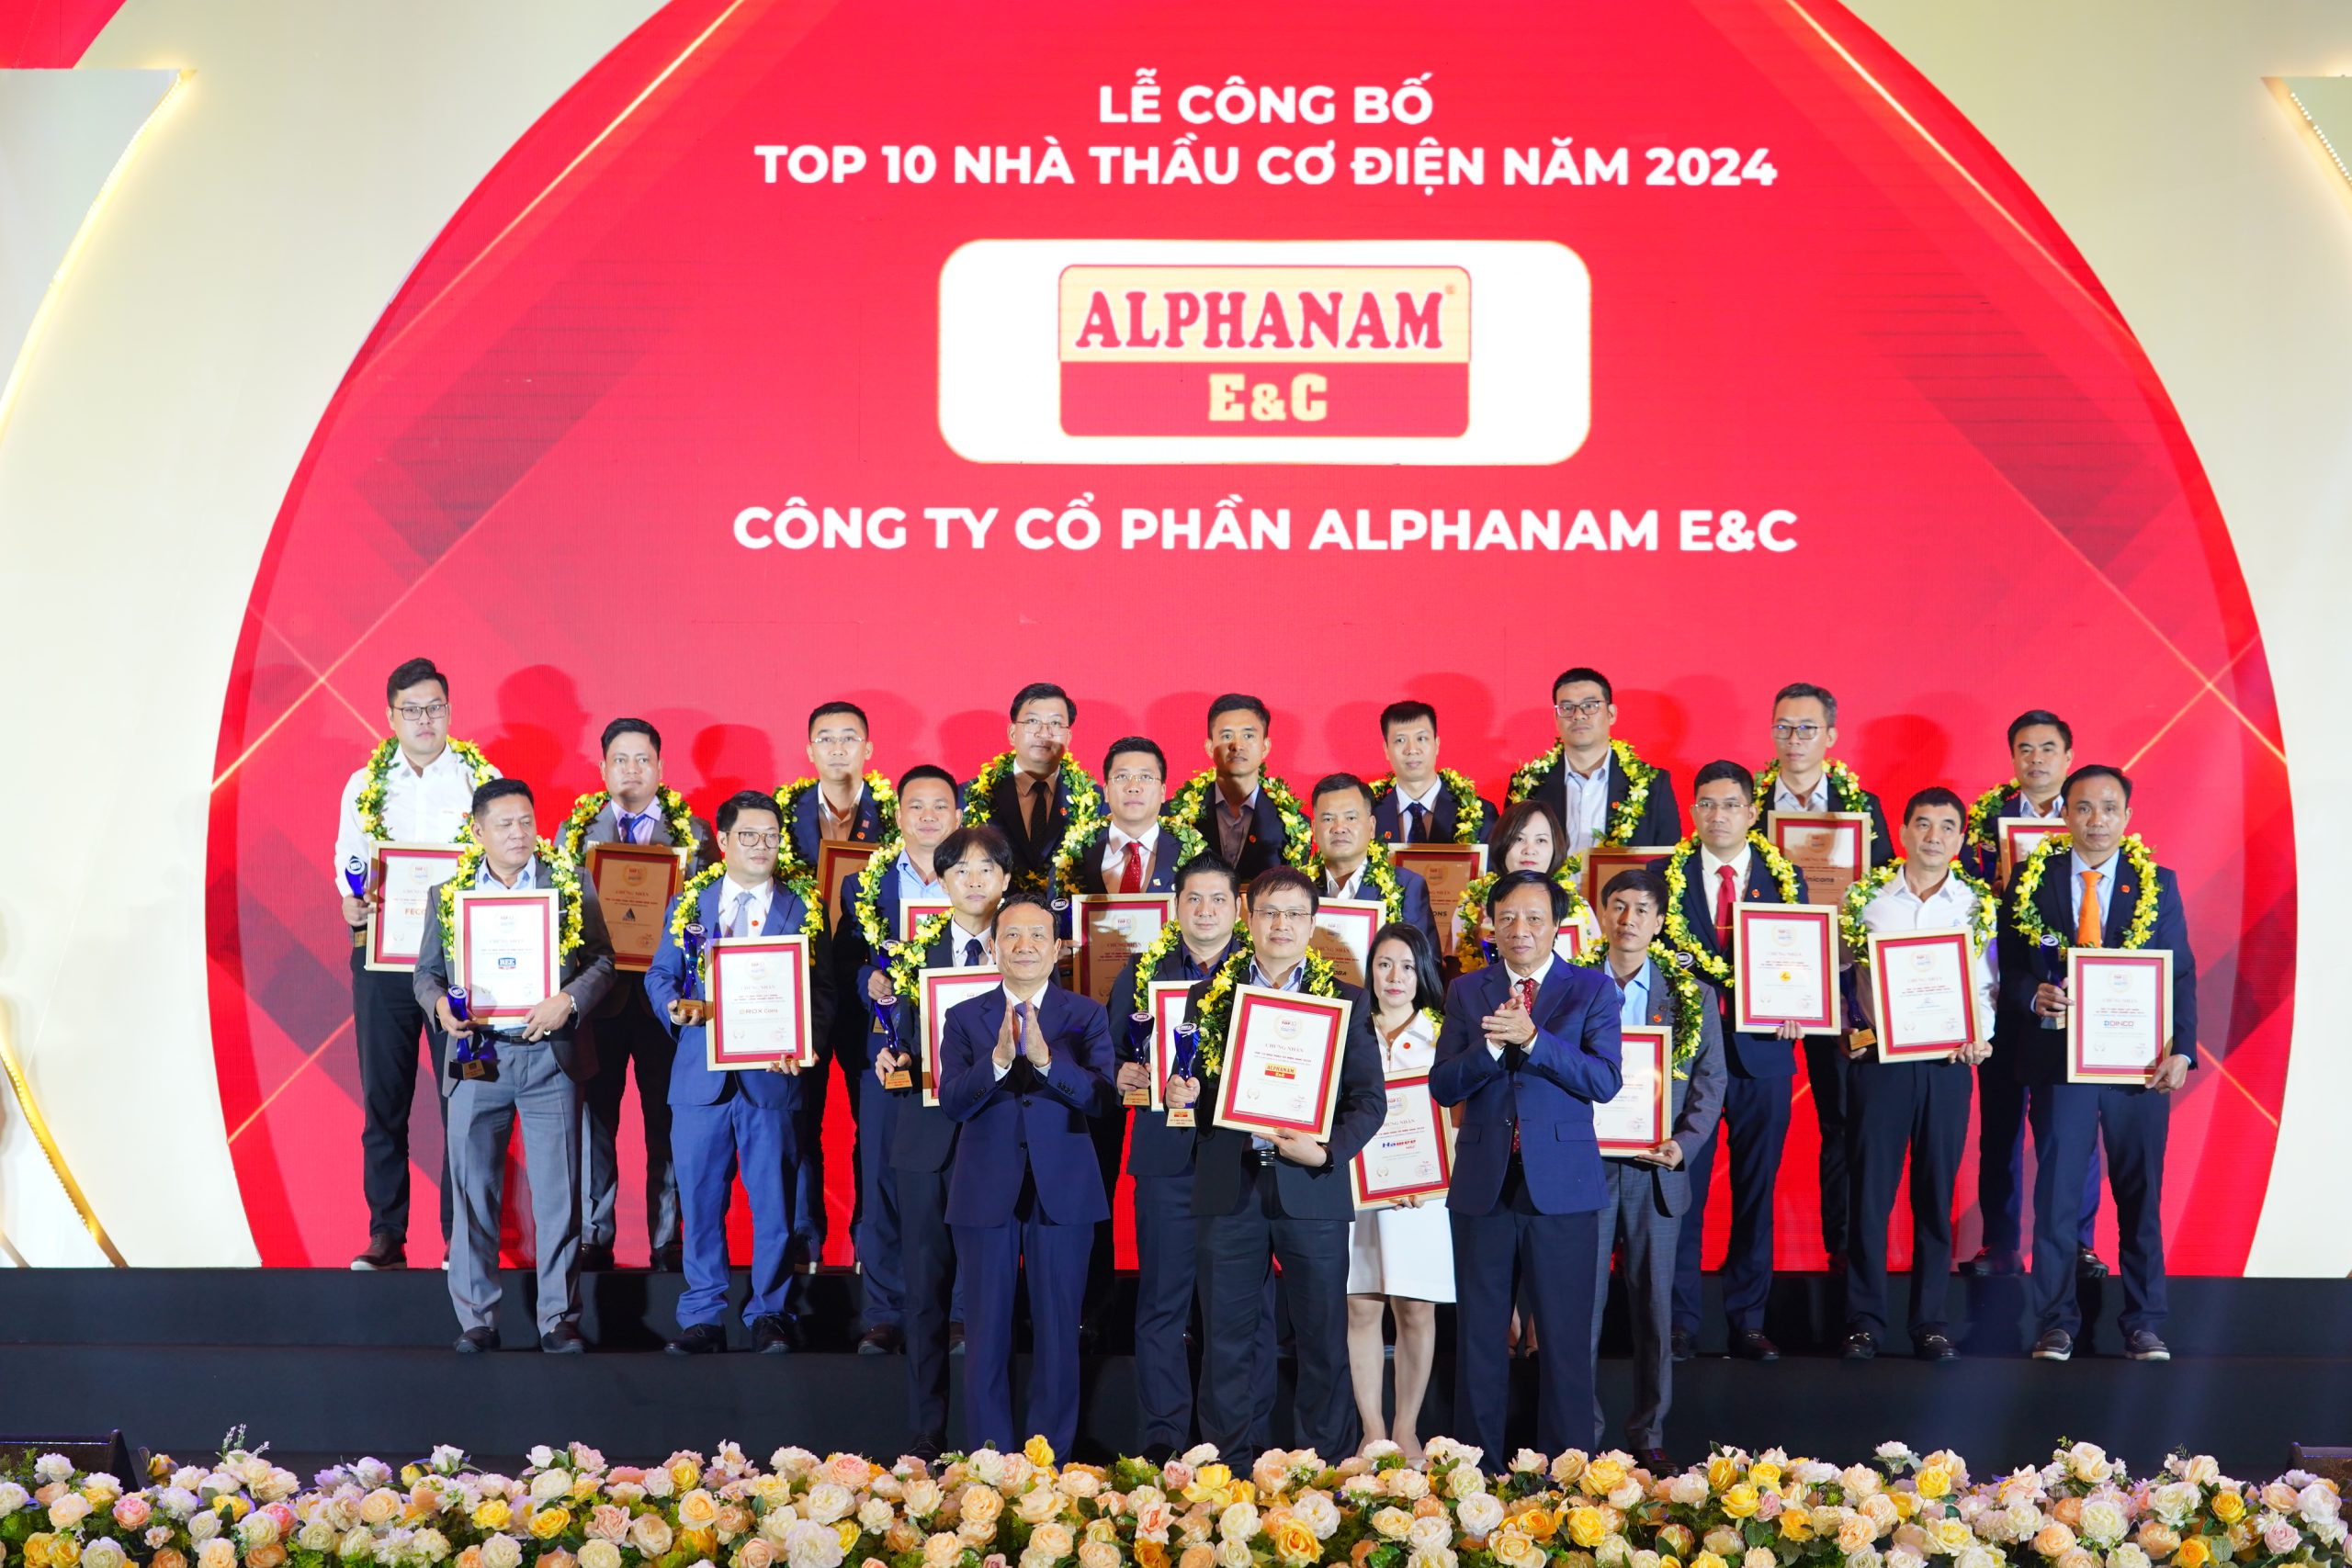 ALPHANAM E&C ĐƯỢC VINH DANH “TOP 10 NHÀ THẦU CƠ ĐIỆN 2024”